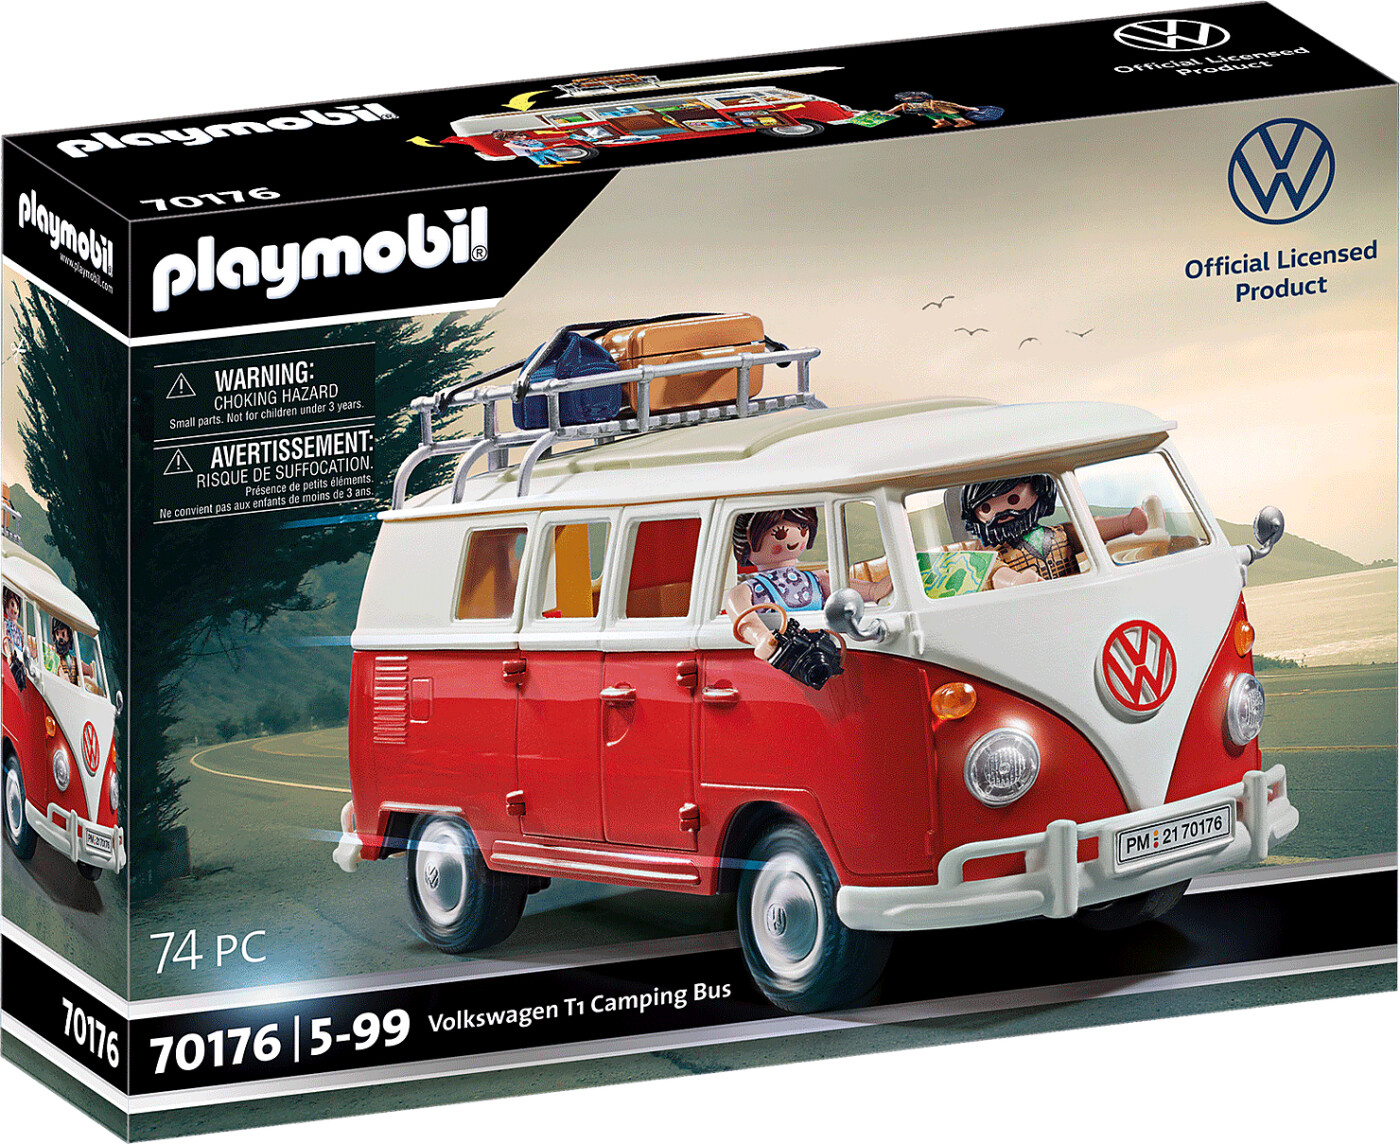 Billede af Playmobil Volkswagen - T1 Camping Bus - 70176 hos Gucca.dk